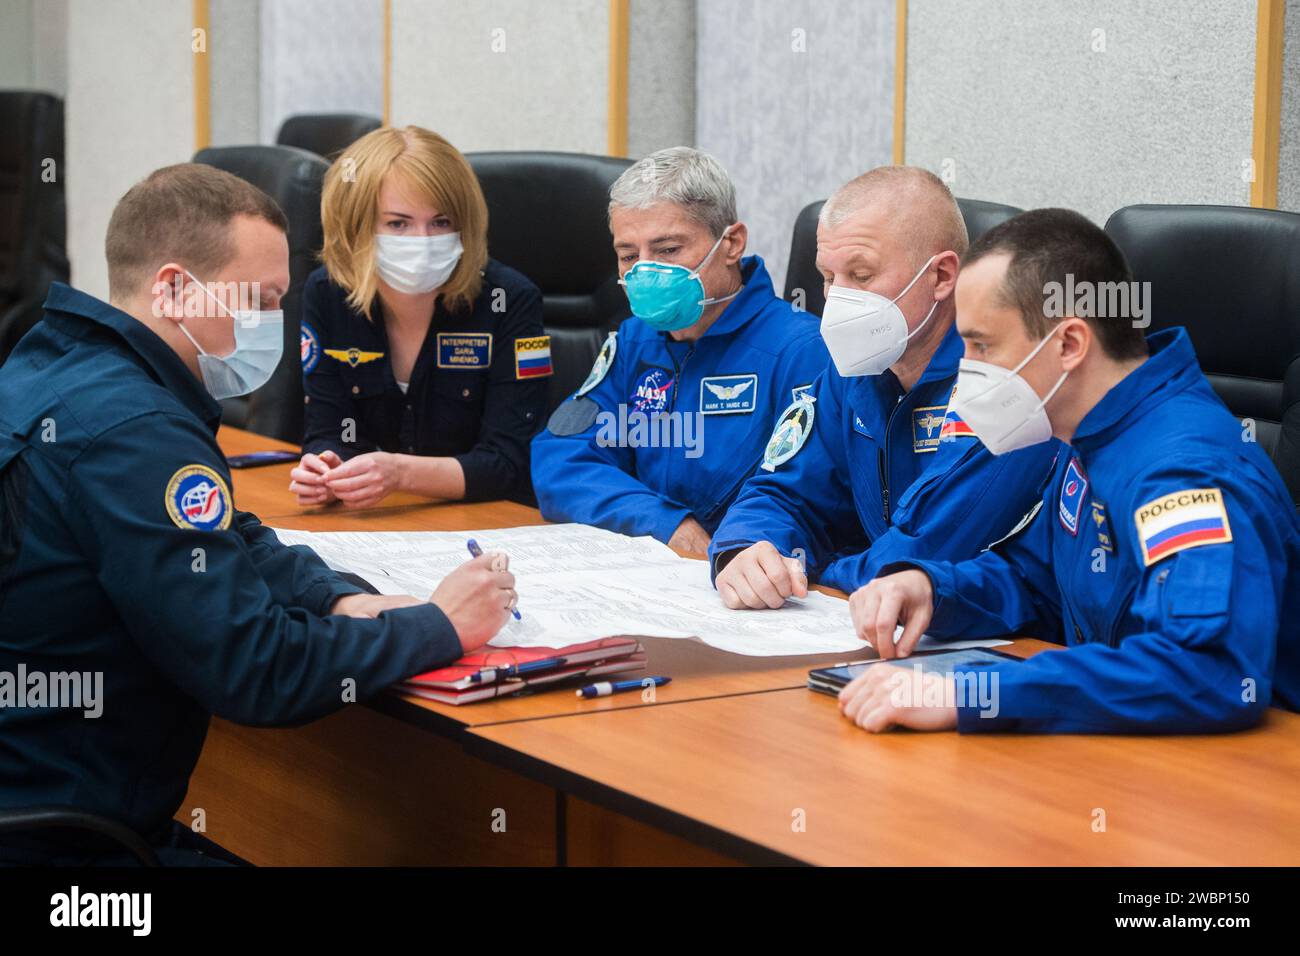 Die Besatzungsmitglieder der Expedition 64 der NASA-Astronaut Mark Vande Hei (links) und die russischen Kosmonauten Oleg Nowitskiy (Mitte) und Petr Dubrov (rechts) von Roscosmos überprüfen die Startverfahren mit Trainern, Dienstag, 6. Oktober 2020, im Cosmonaut-Hotel in Baikonur, Kasachstan. Die Mitglieder der Expedition 64, Sergej Ryzhikov aus Roscosmos, Sergej Kud-Swerchkov aus Roscosmos und Kate Rubins von der NASA, sollen am 14. Oktober an Bord des Raumschiffs Sojus MS-17 zur Internationalen Raumstation starten. Stockfoto